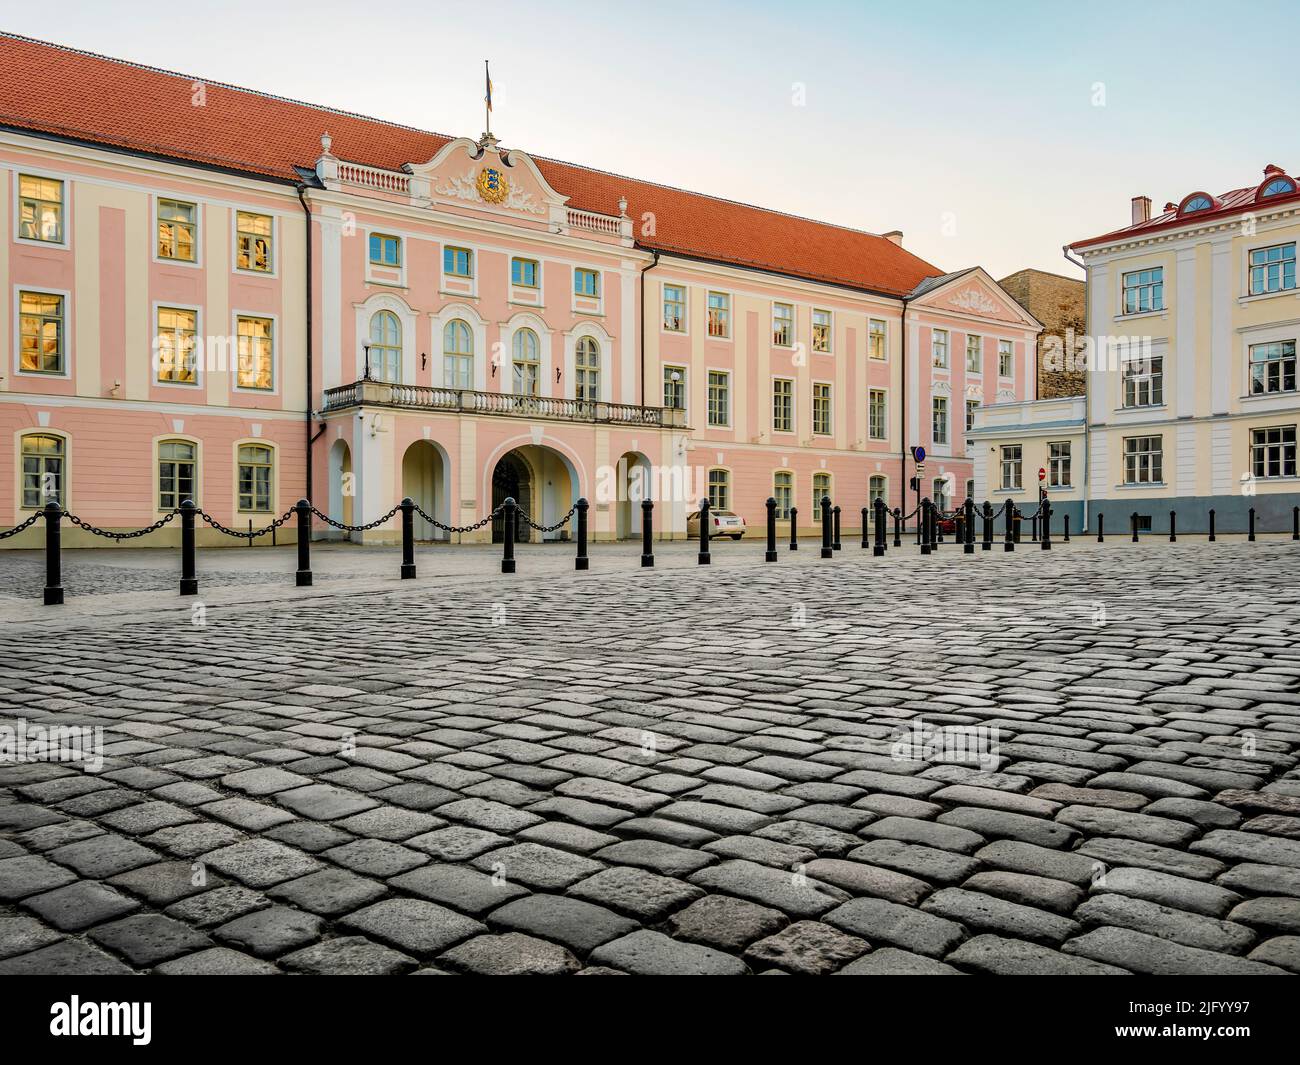 The Parliament of Estonia, Toompea Castle, Old Town, Tallinn, Estonia, Europe Stock Photo